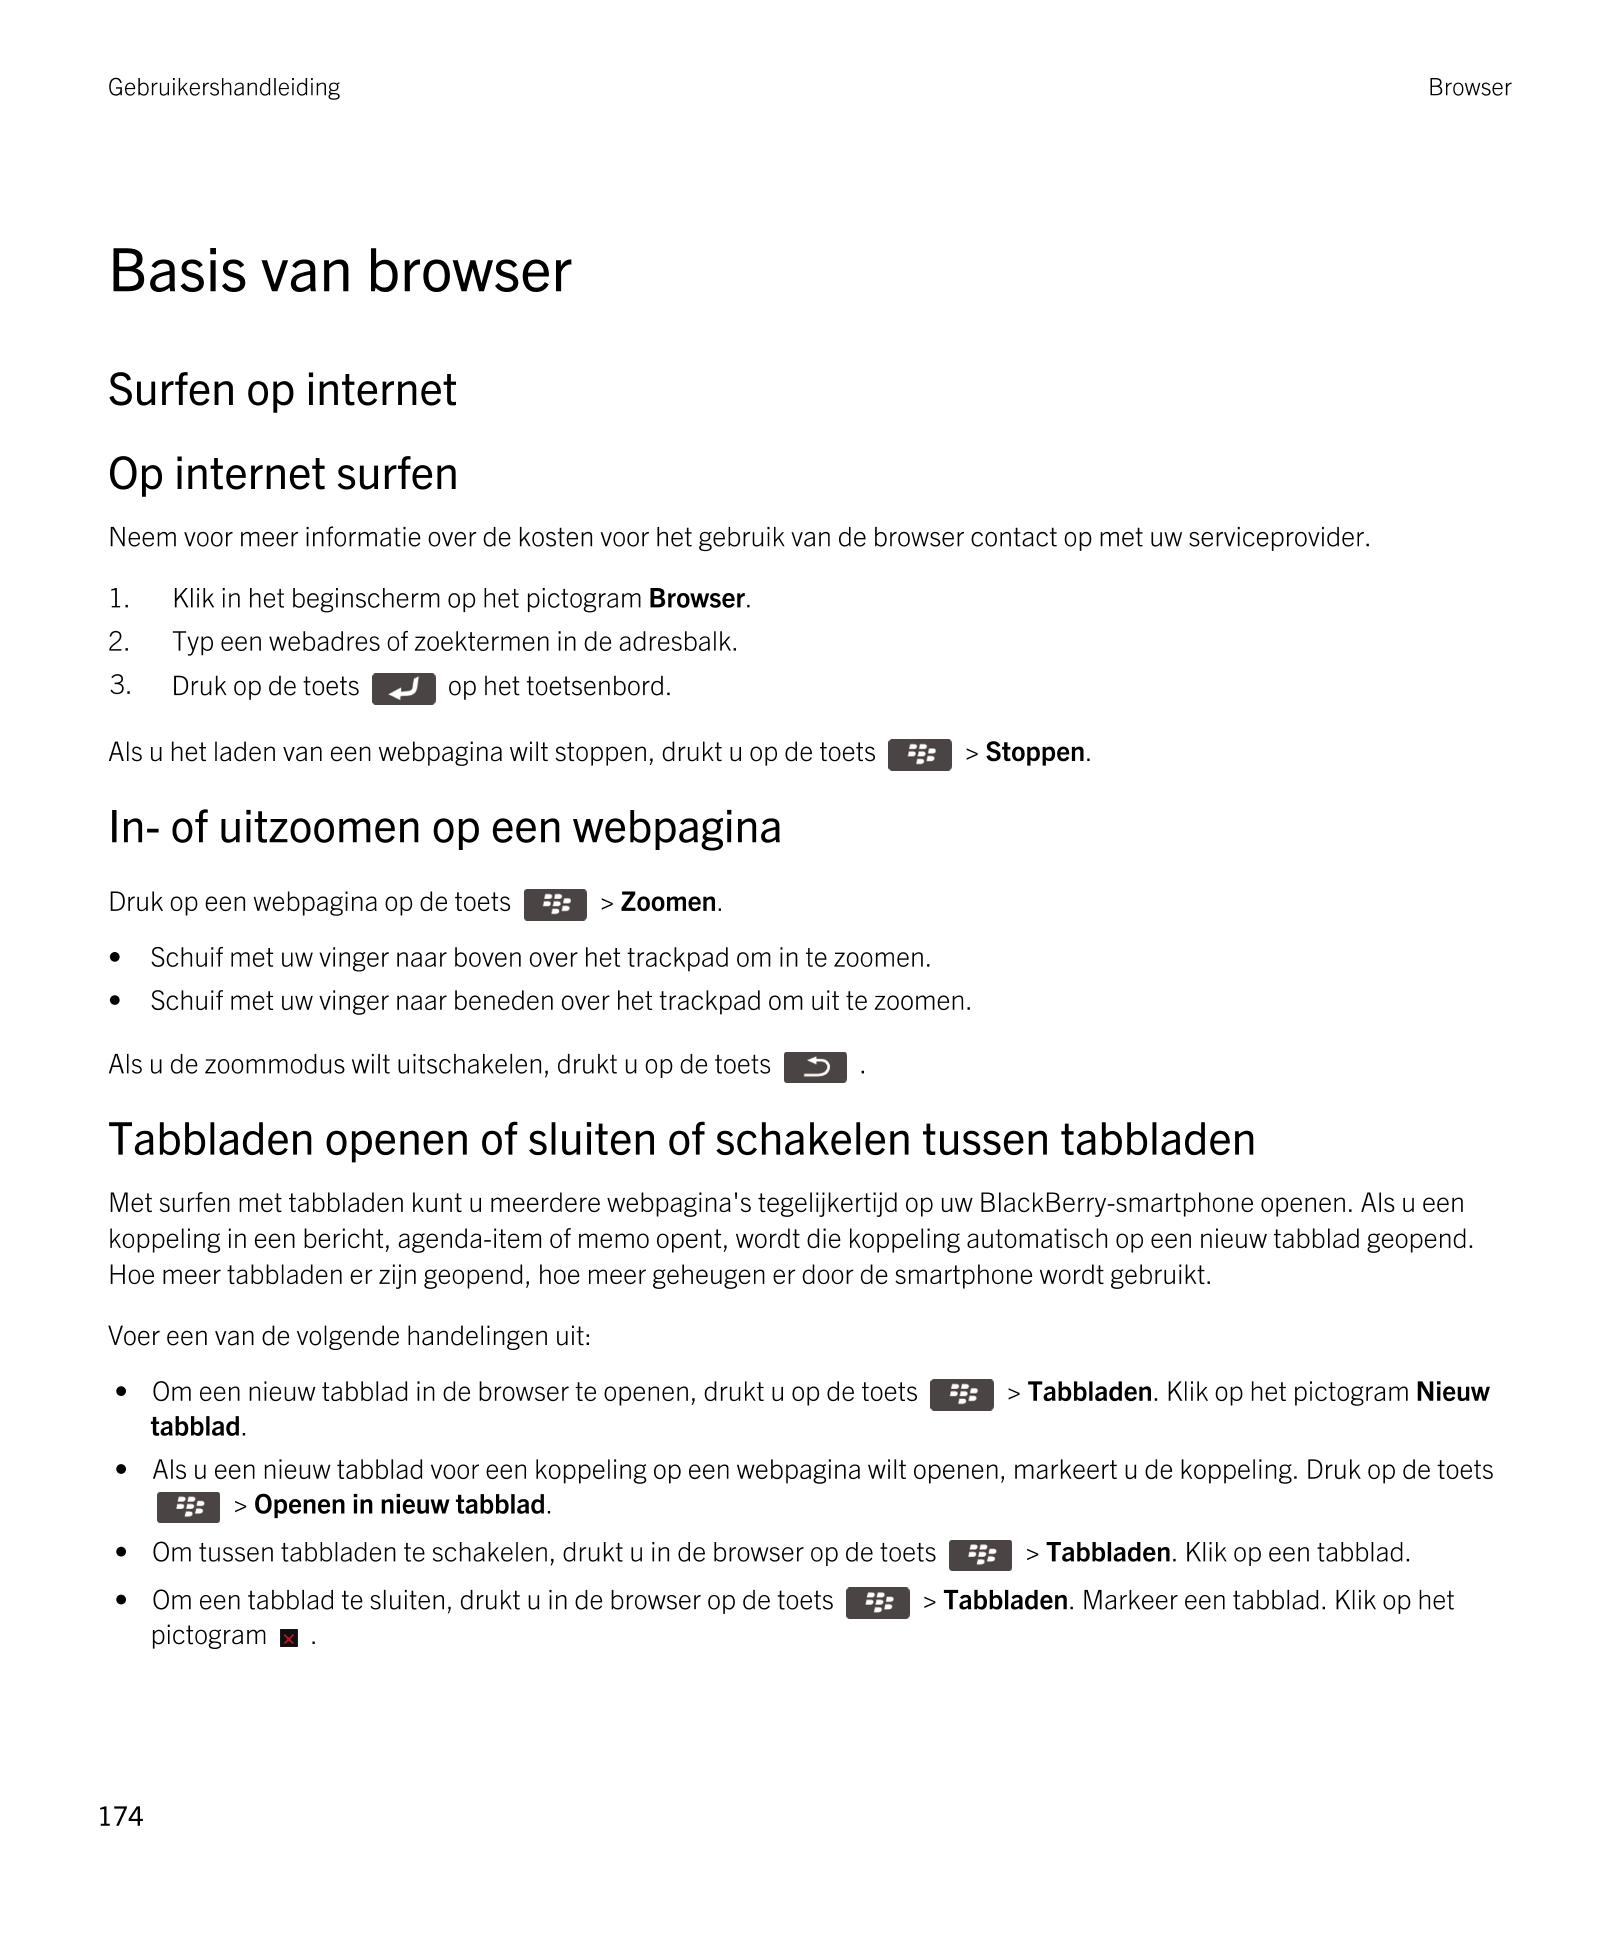 Gebruikershandleiding Browser
Basis van browser
Surfen op internet
Op internet surfen
Neem voor meer informatie over de kosten v